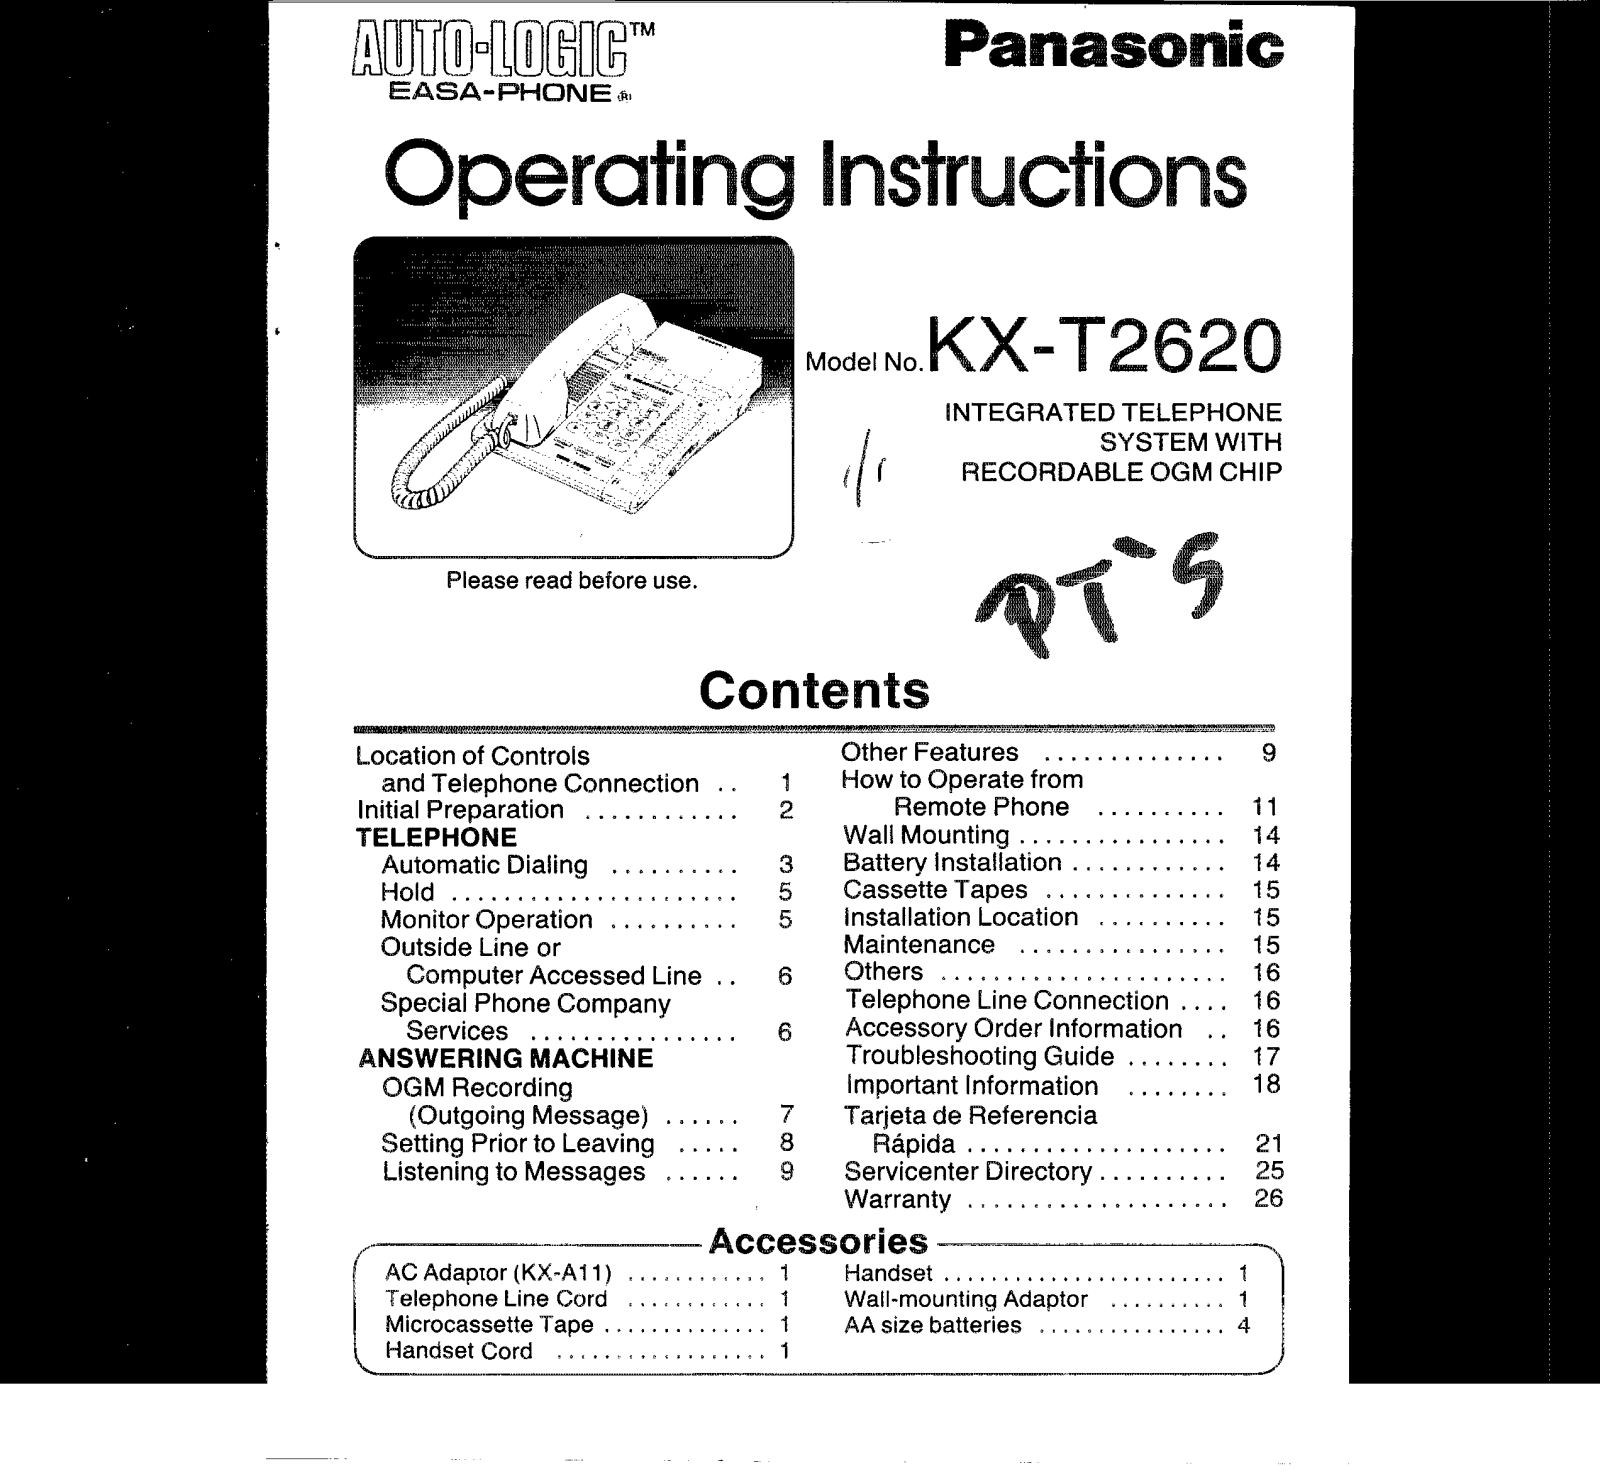 Panasonic kx-t2620 Operation Manual